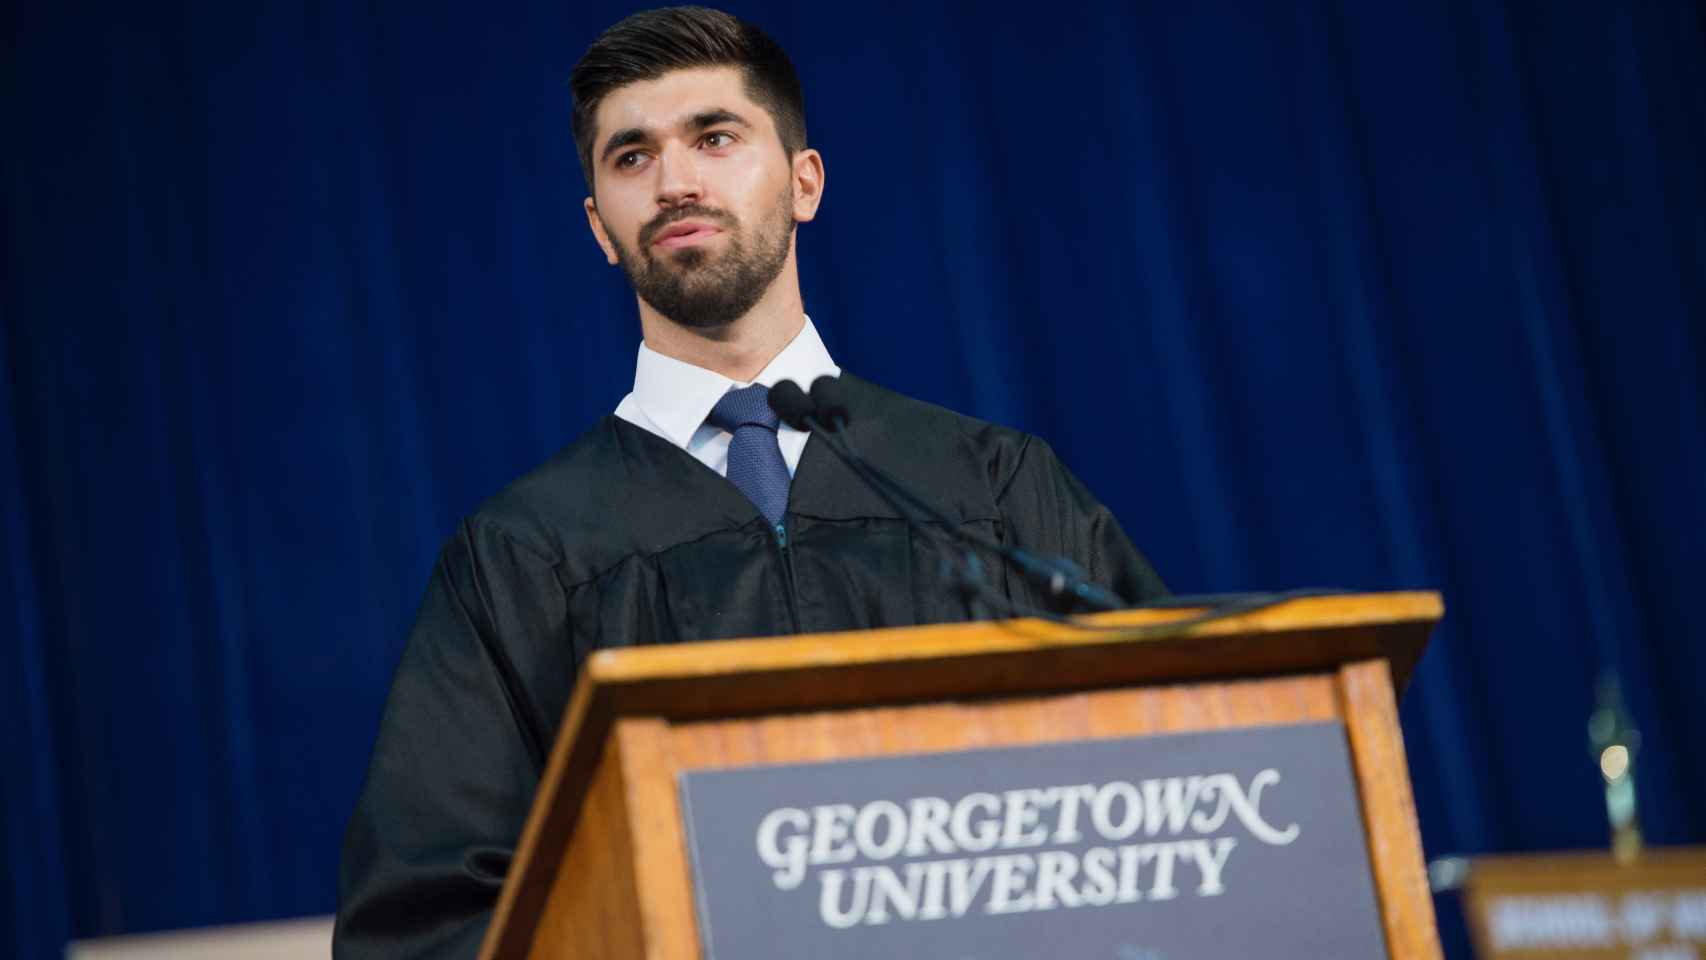 Tomás durante su graduación en Georgetown